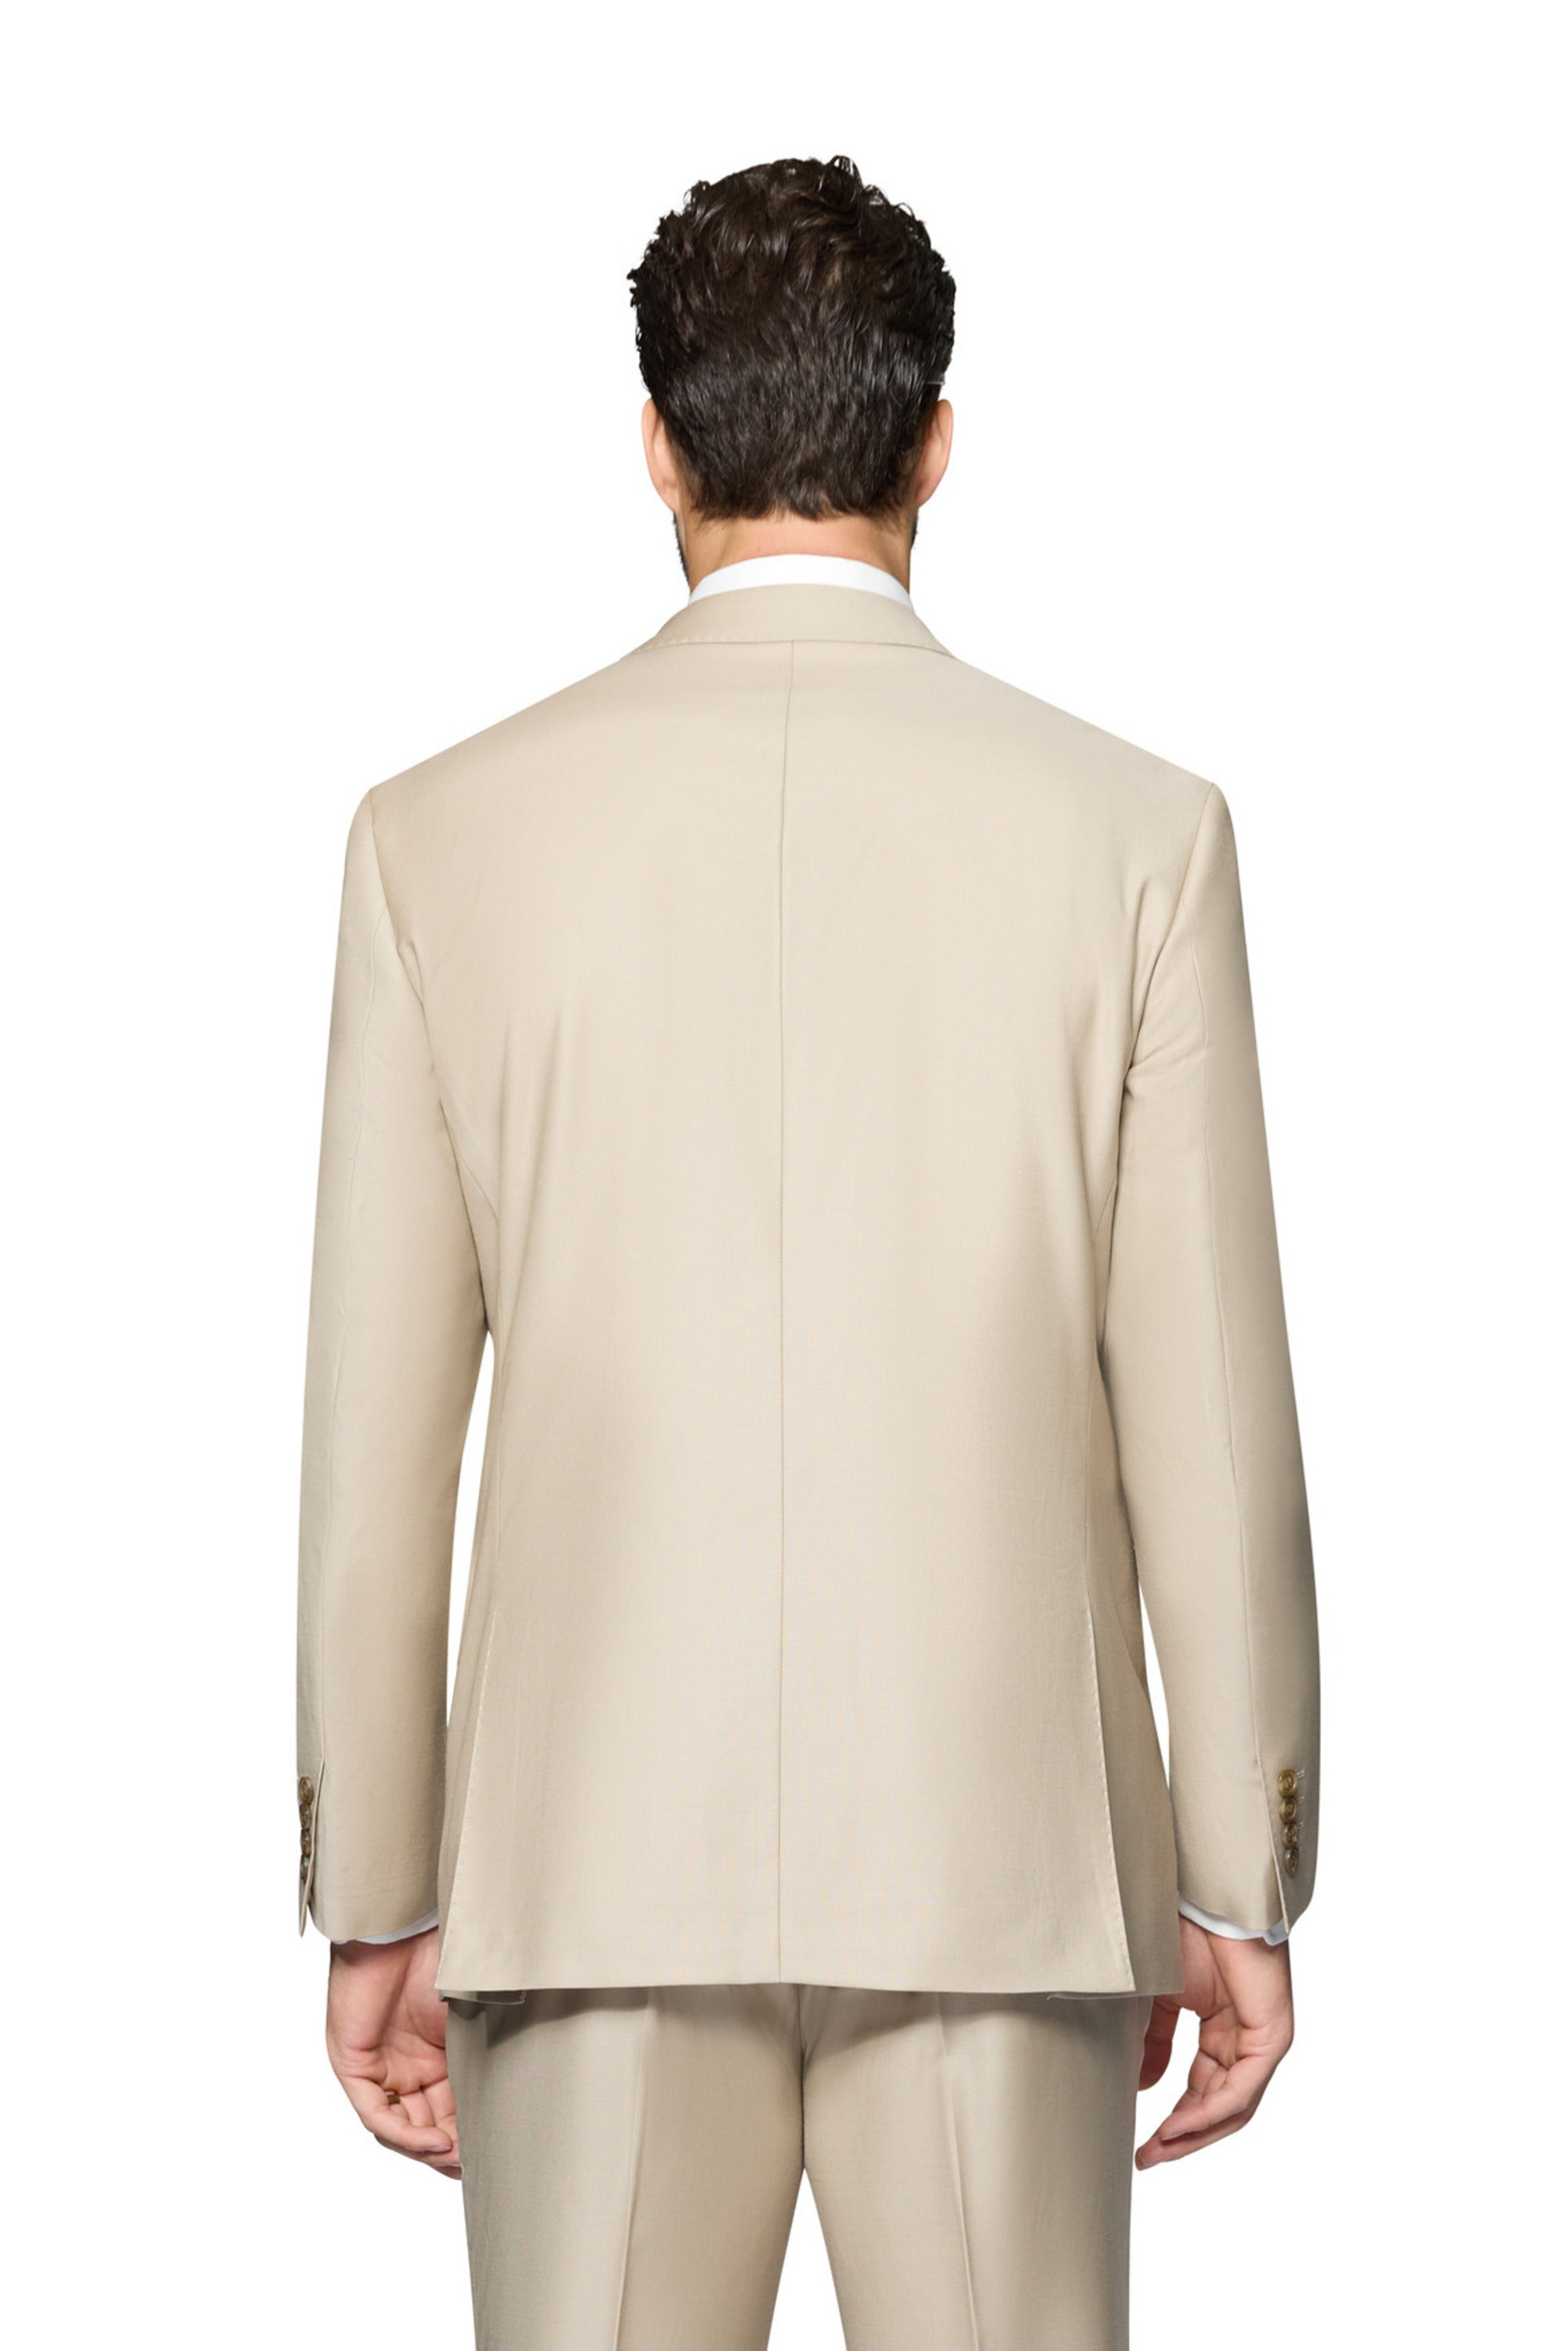 Berragamo Elegant - Faille Wool Solid Suit Slim - Tan